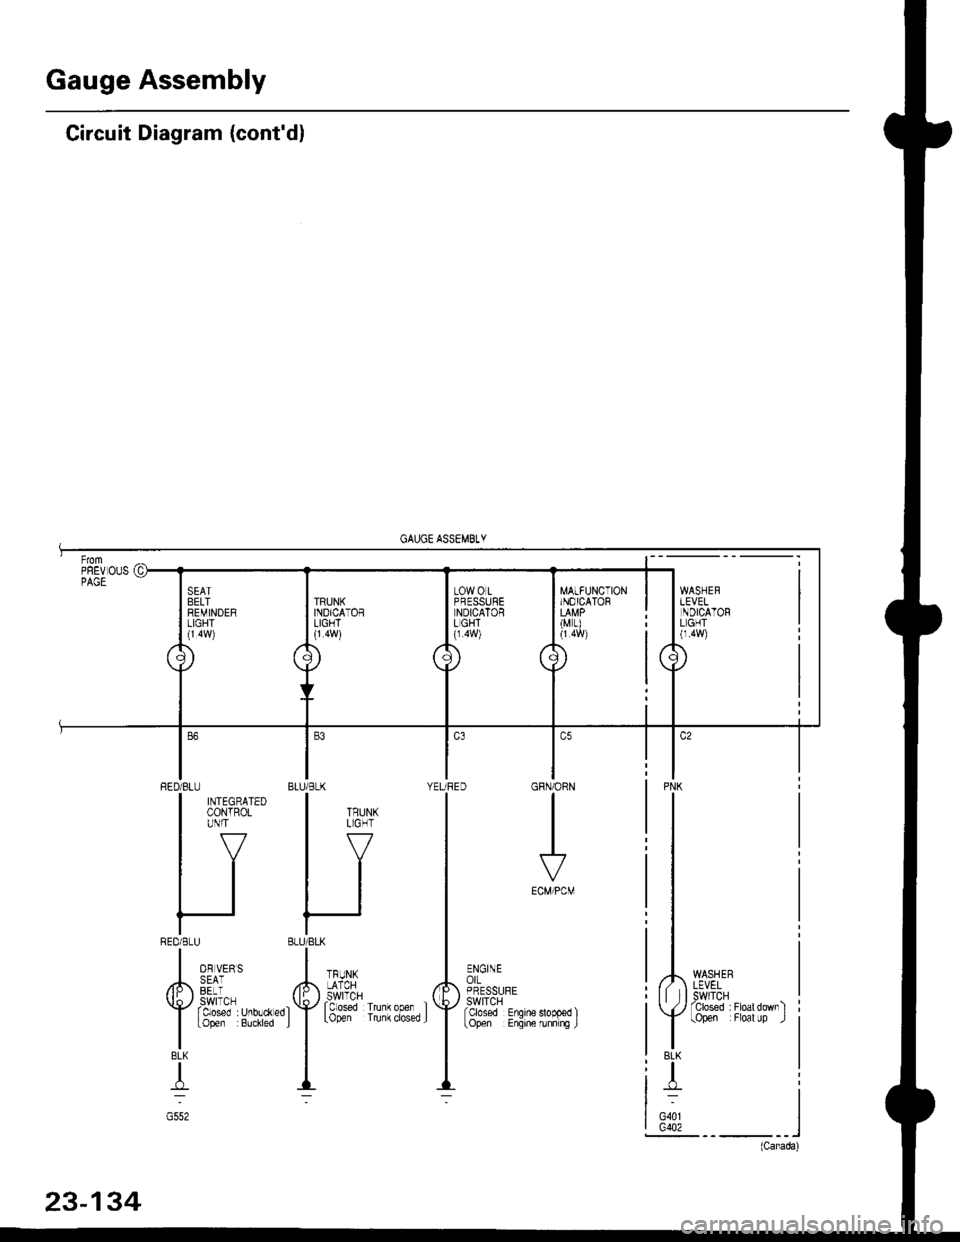 HONDA CIVIC 1996 6.G Workshop Manual Gauge Assembly
Circuit Diagram (contdl
MATFUNCTIONINOICATOR
(M r)
WASHERLEVELSWITCHTclosed :Floatdownltopen Floal up .l
PNK
BLK
T
G401G402
GRN/ORN
I
ECM/PCM
ENGINEorLPRESSURESWITCHfcbsed Enqine
BLU/B